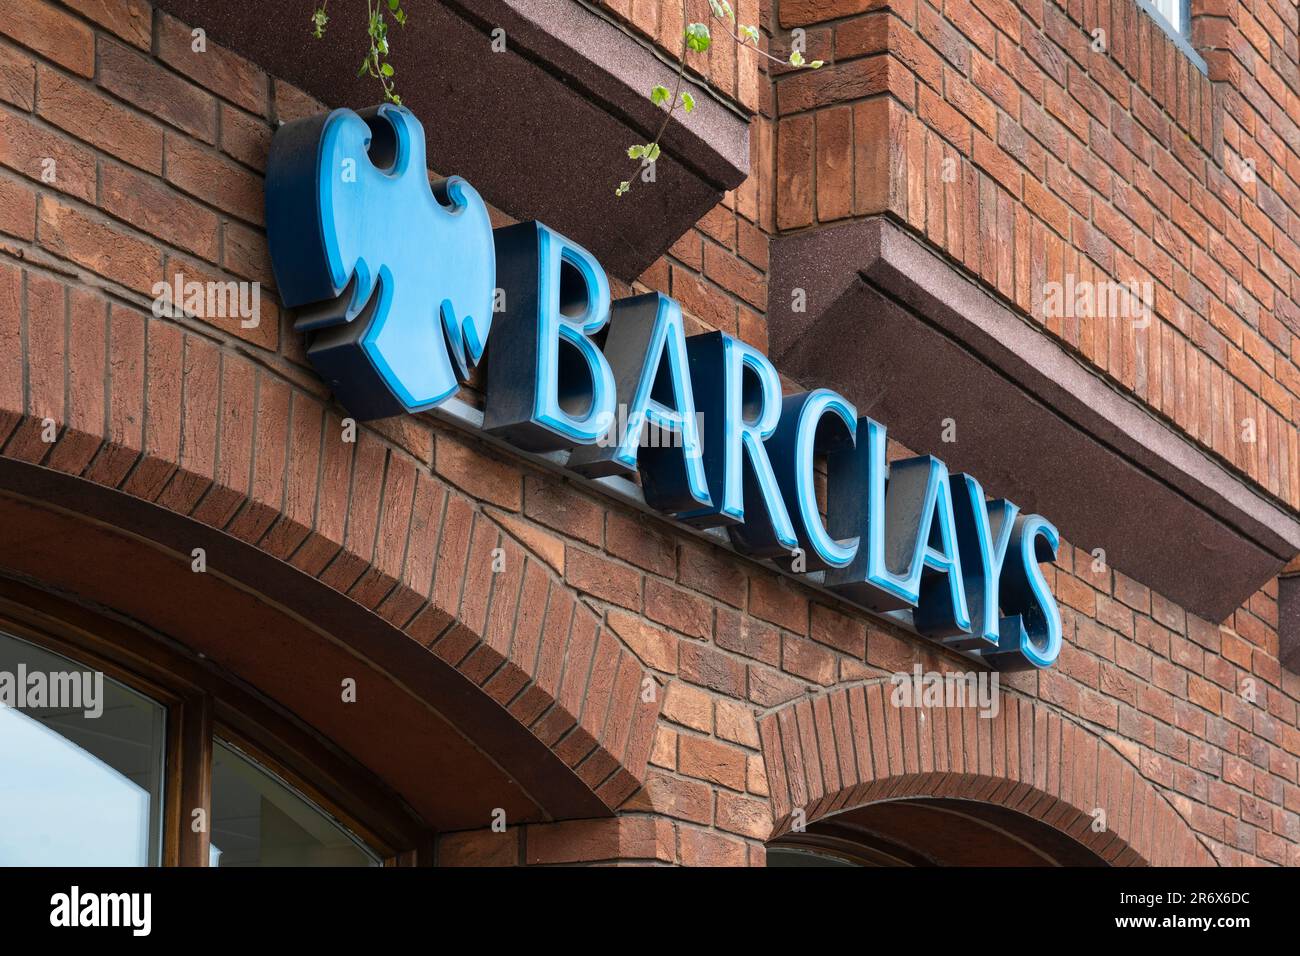 Barclays Bank Logo und Schriftzug auf einer Zweigstelle der vier großen britischen High Street Banks, Farham, Großbritannien. Konzept: High Street Bank, Bankenkrise, Hypothekengeschäfte Stockfoto